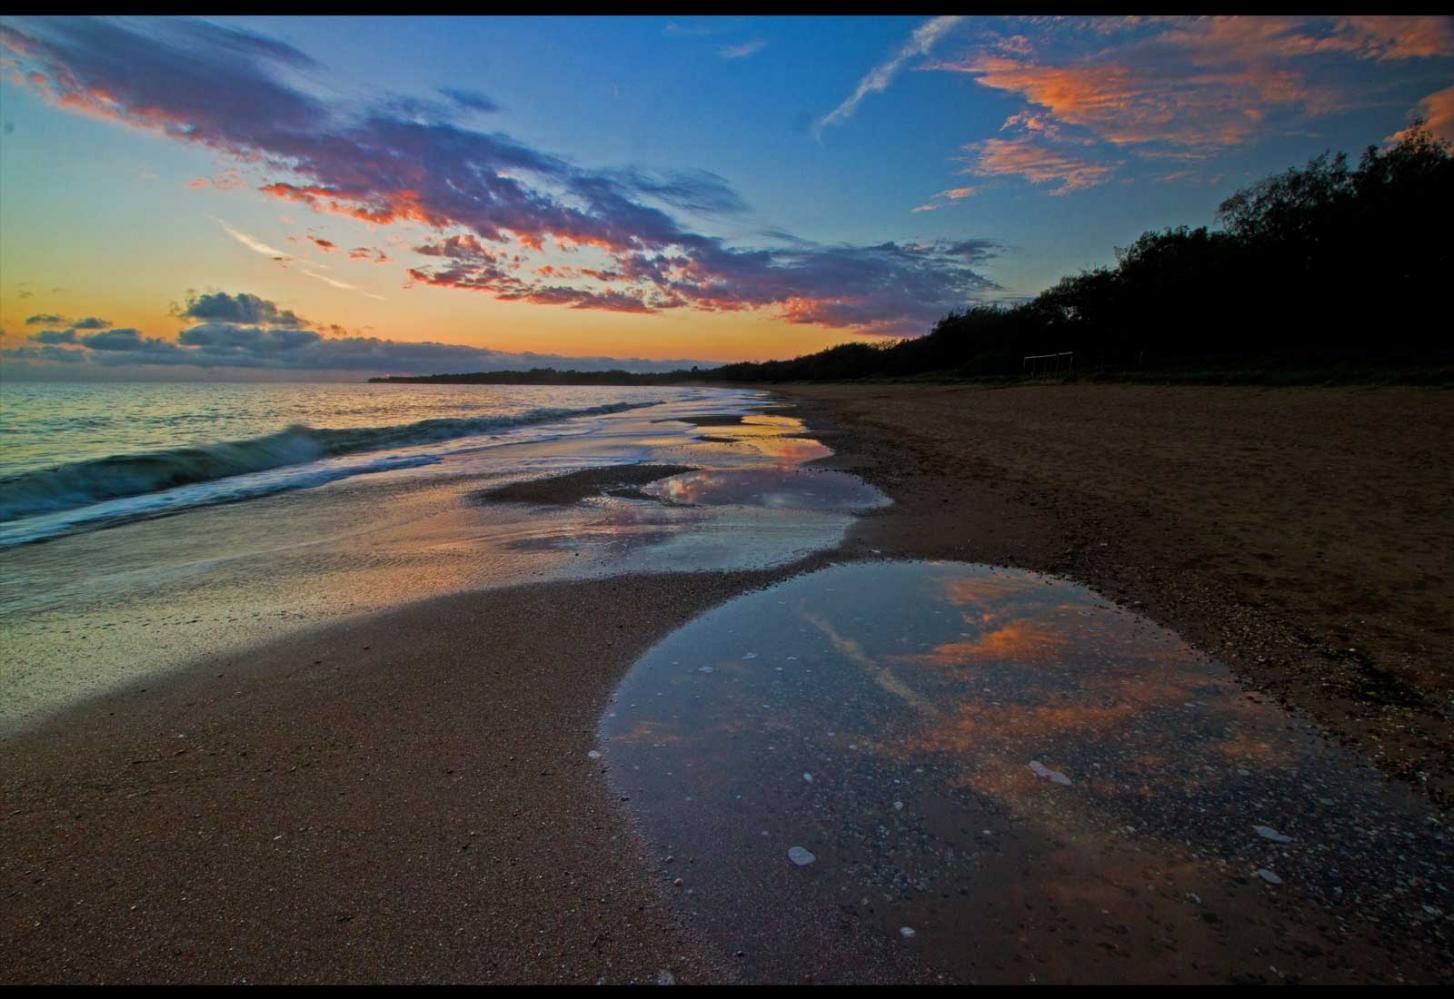 Mon Repos Beach, dawn.